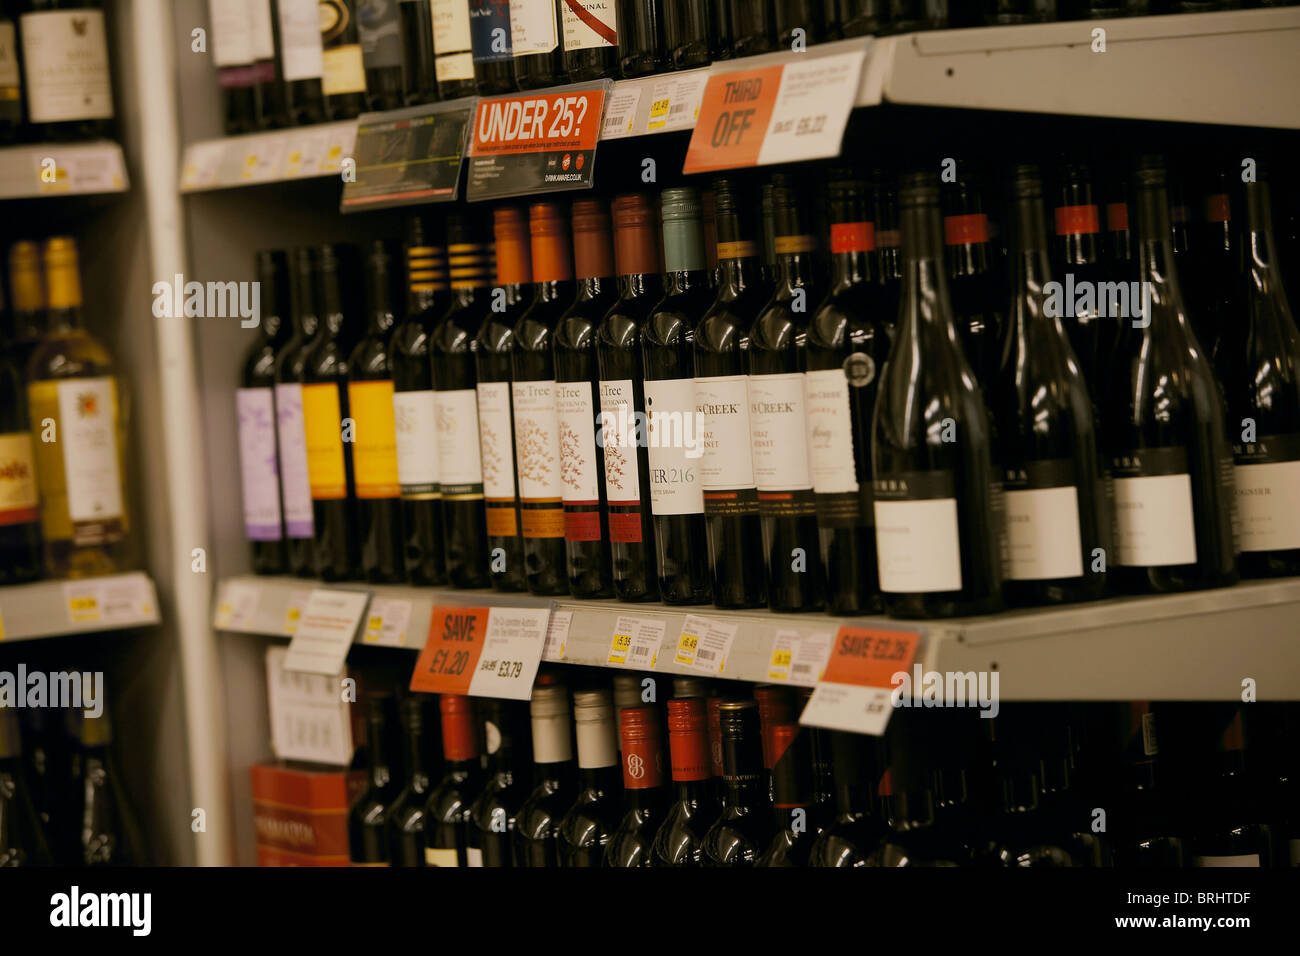 Selección de vinos para la venta apilados en una estantería de supermercado, REINO UNIDO Foto de stock